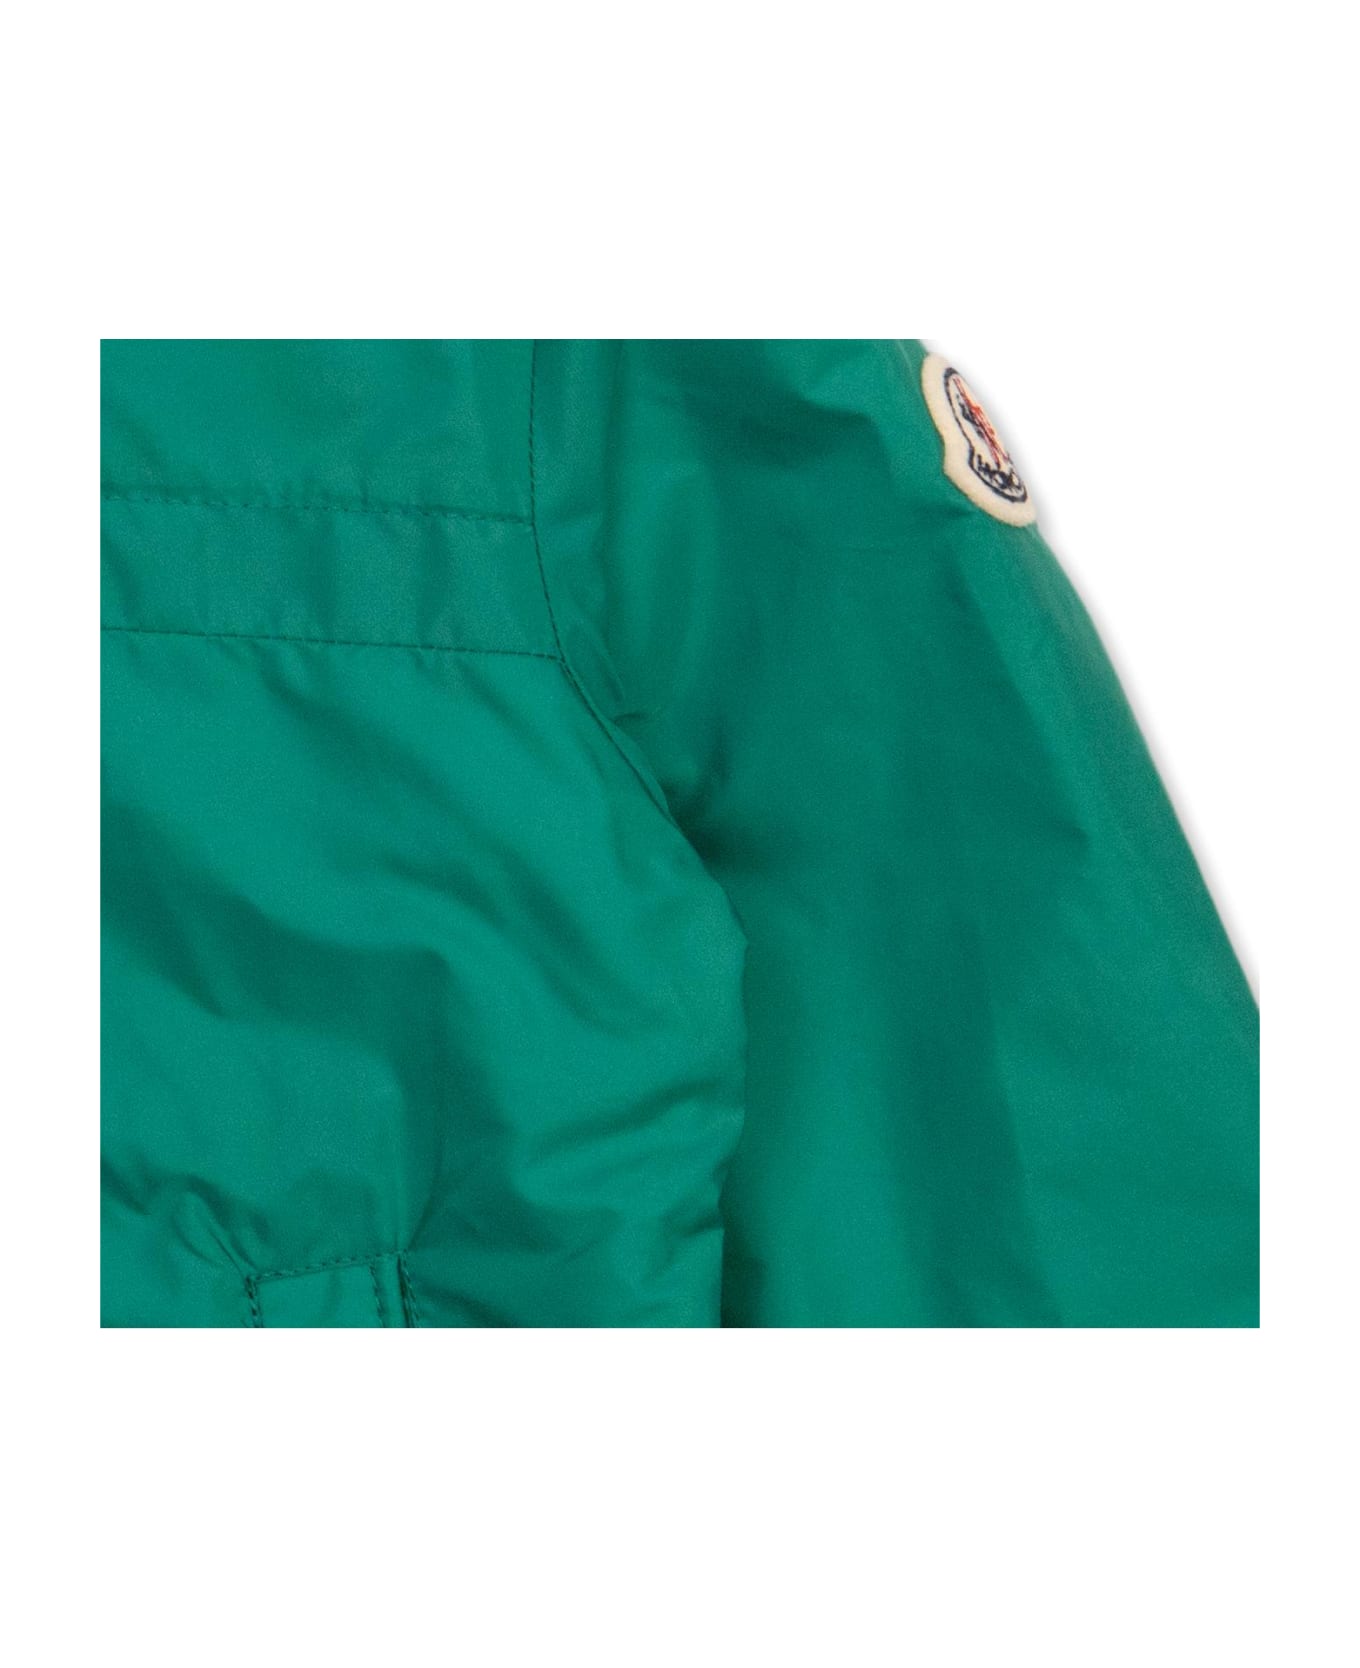 Moncler Enfant 'anton' Jacket - Verde